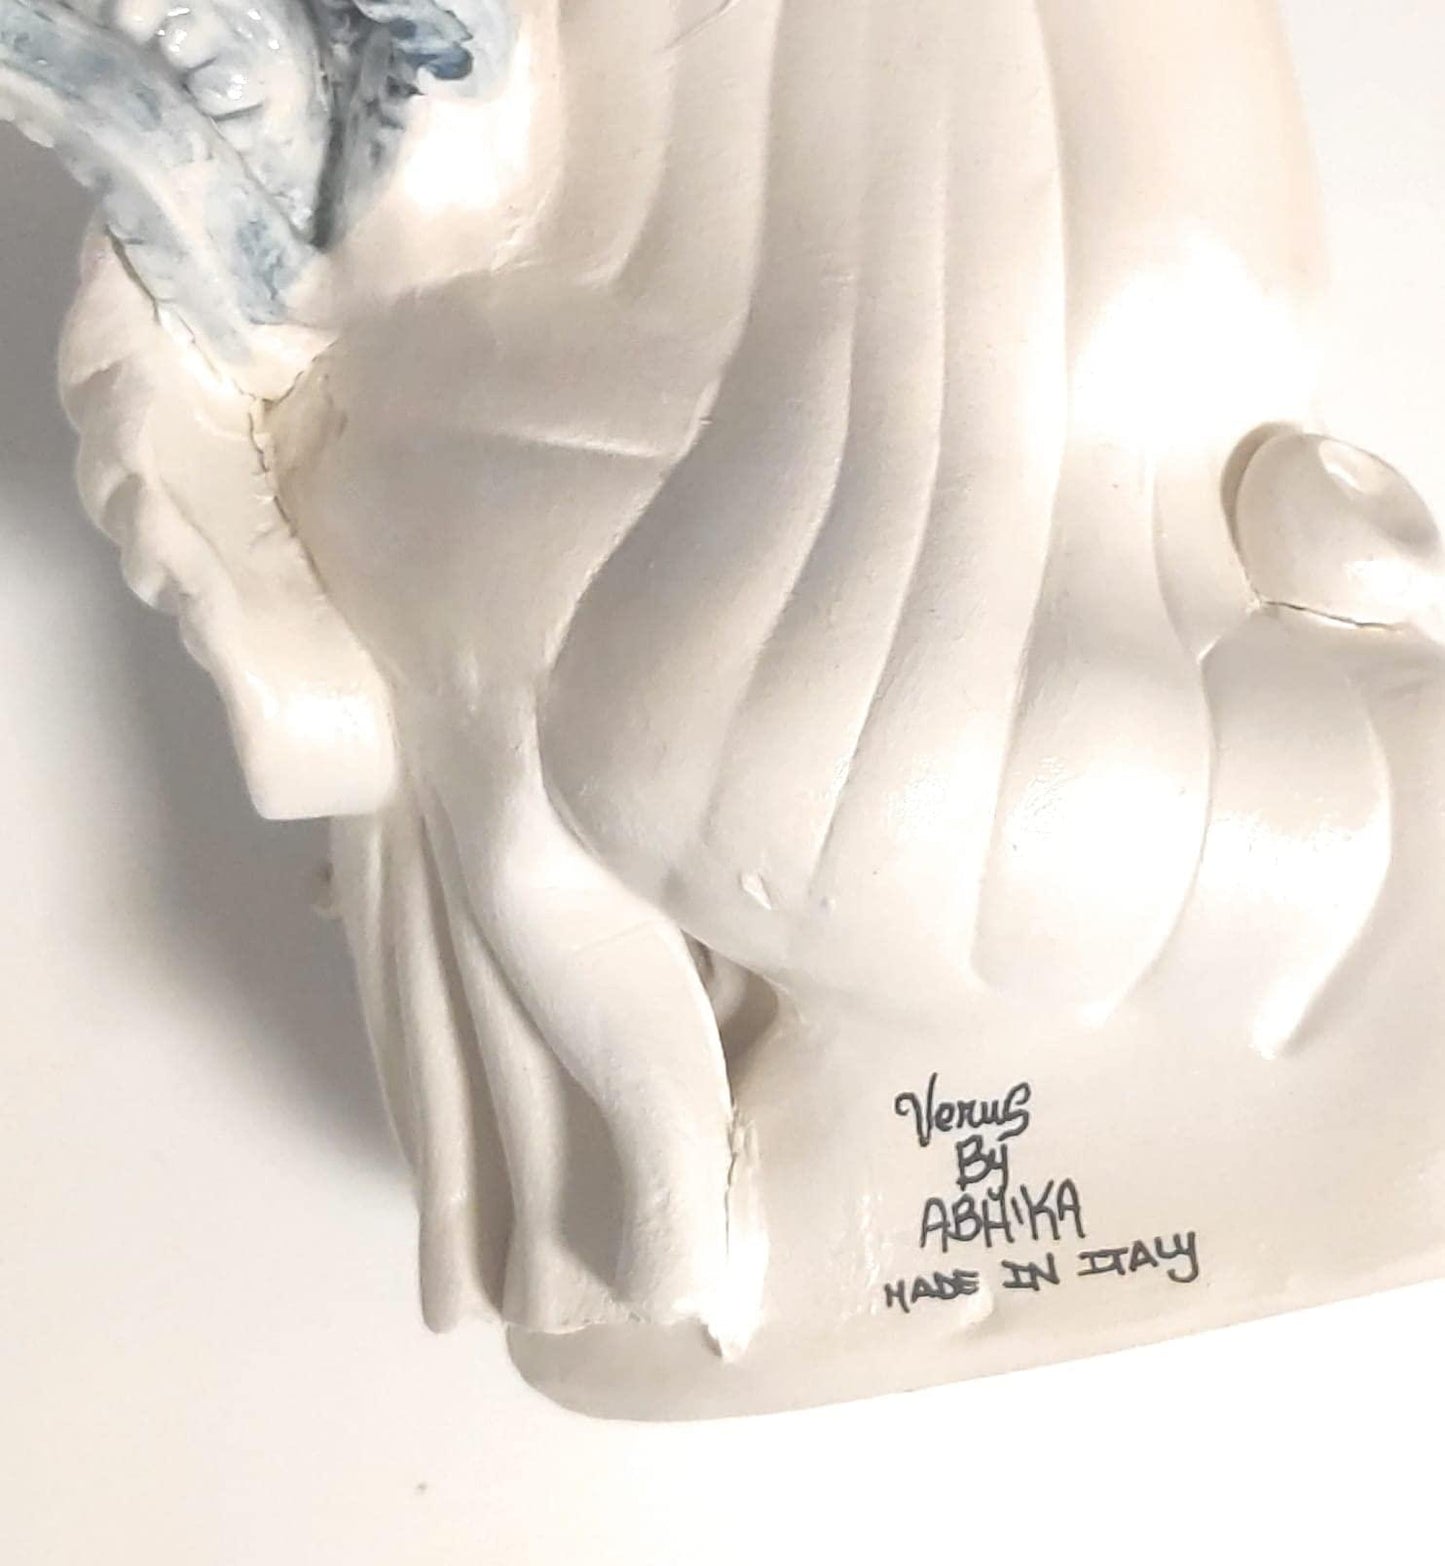 Vaso Moro Small Medusa Uomo, designed by Abhika, ceramiche fatte a mano 100% made in Italy - MARIKA DE PAOLA - HOME DECOR